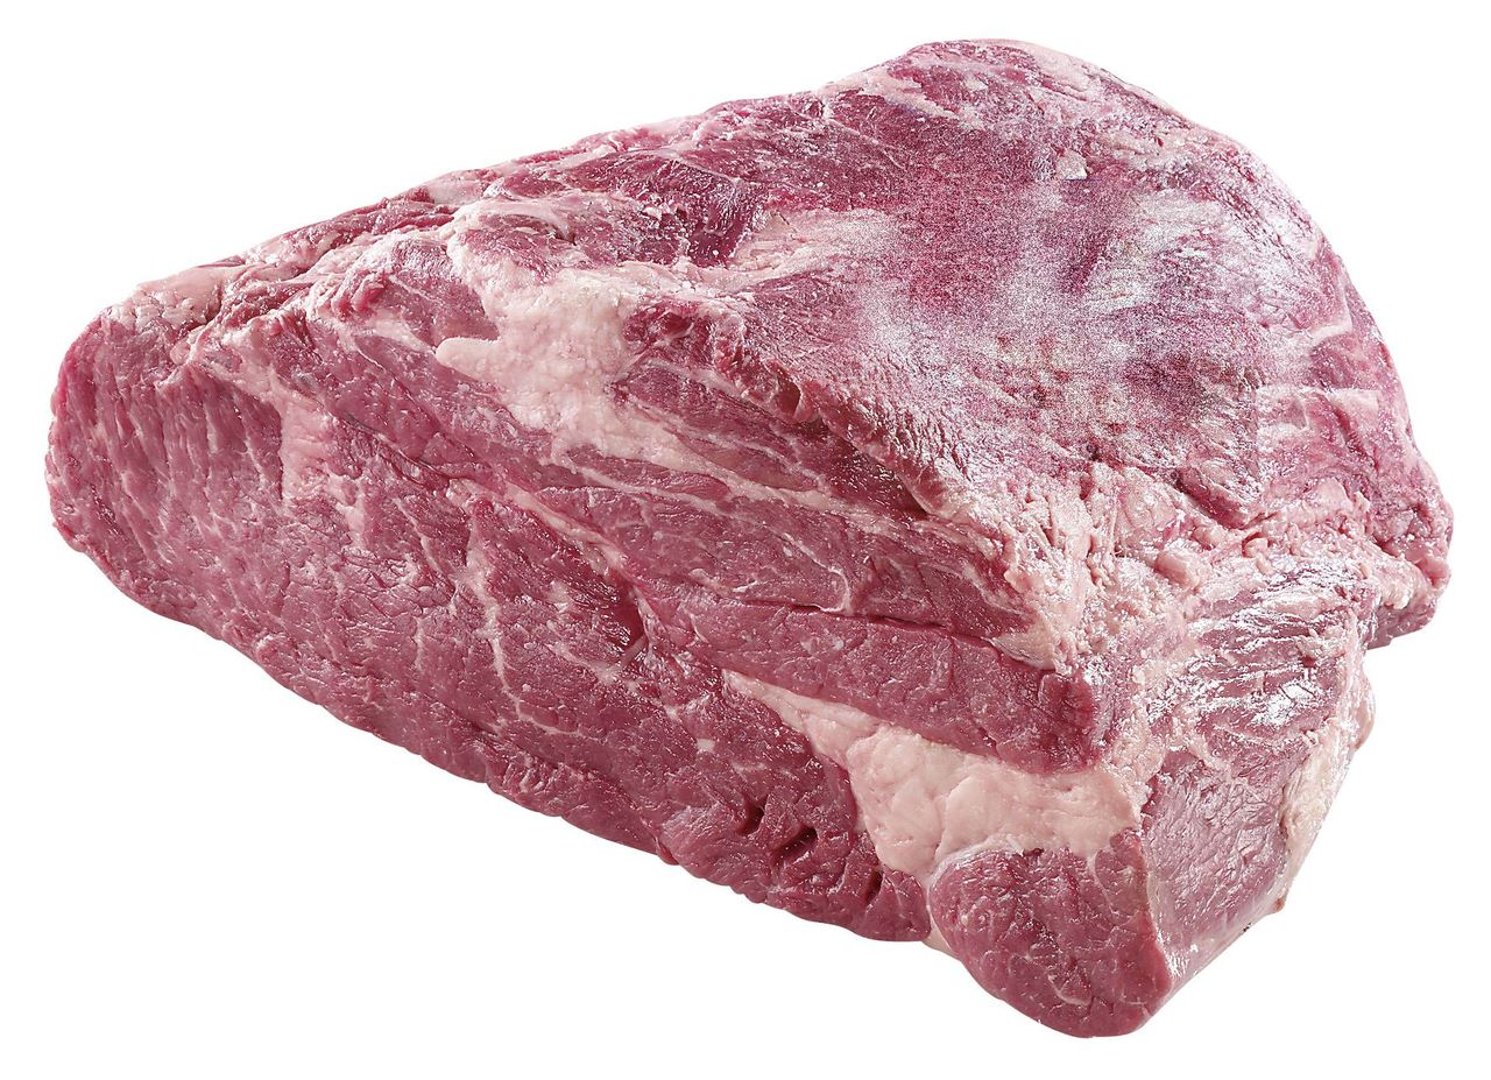 US Rindernacken vorgereift, halbes Stück, ohne Knochen, vak.-verpackt ca. 2,5 kg